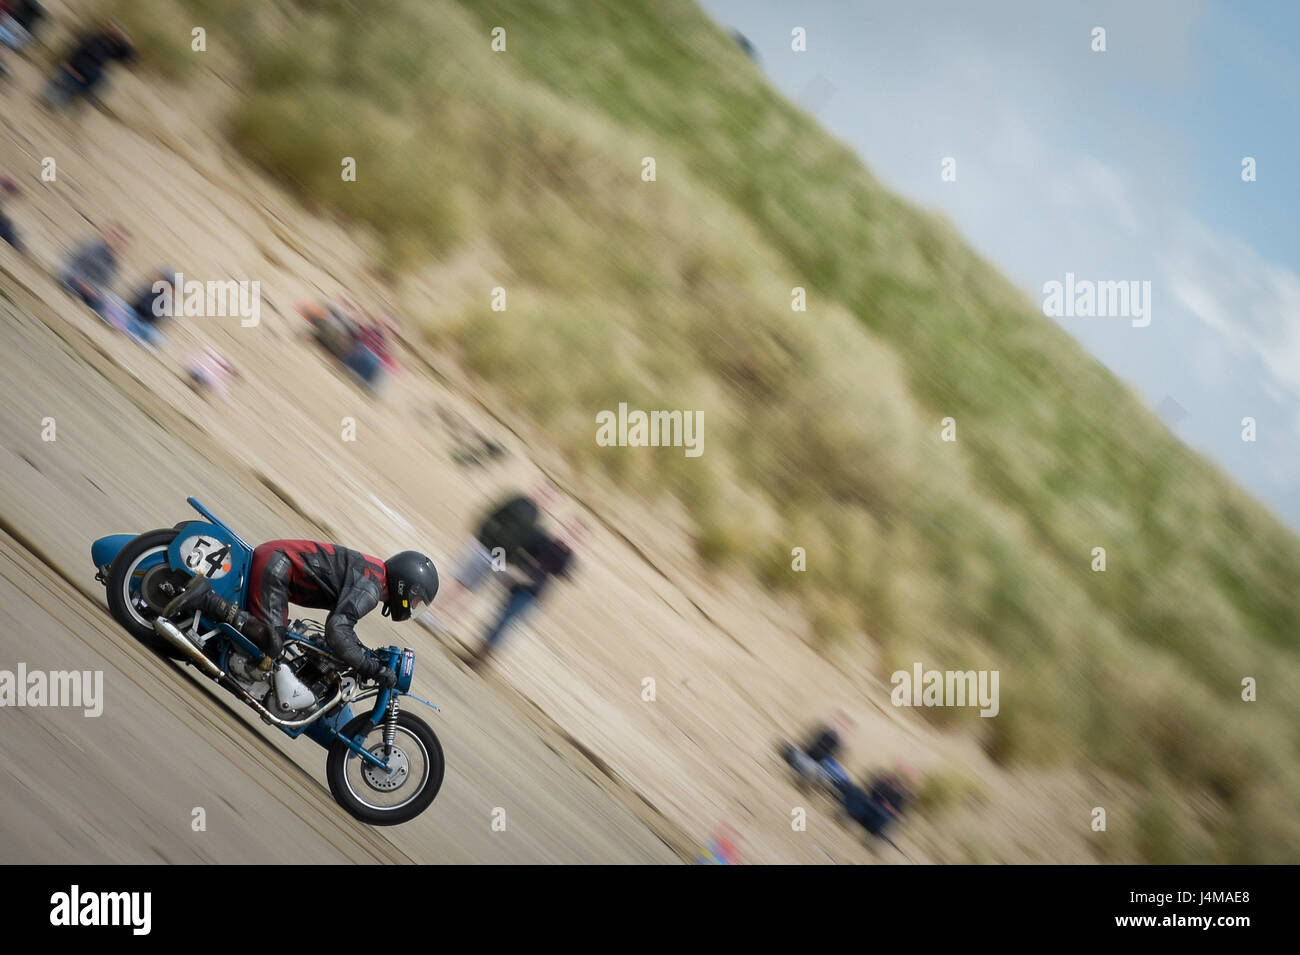 Ein Beiwagen Radfahrer Rennen in der Straightliners "Top Speed" Event im Pendine Sands, Wales, wo Reiter und Fahrer für Top konkurrieren-Geschwindigkeiten über eine gemessene Meile am Strand. Stockfoto